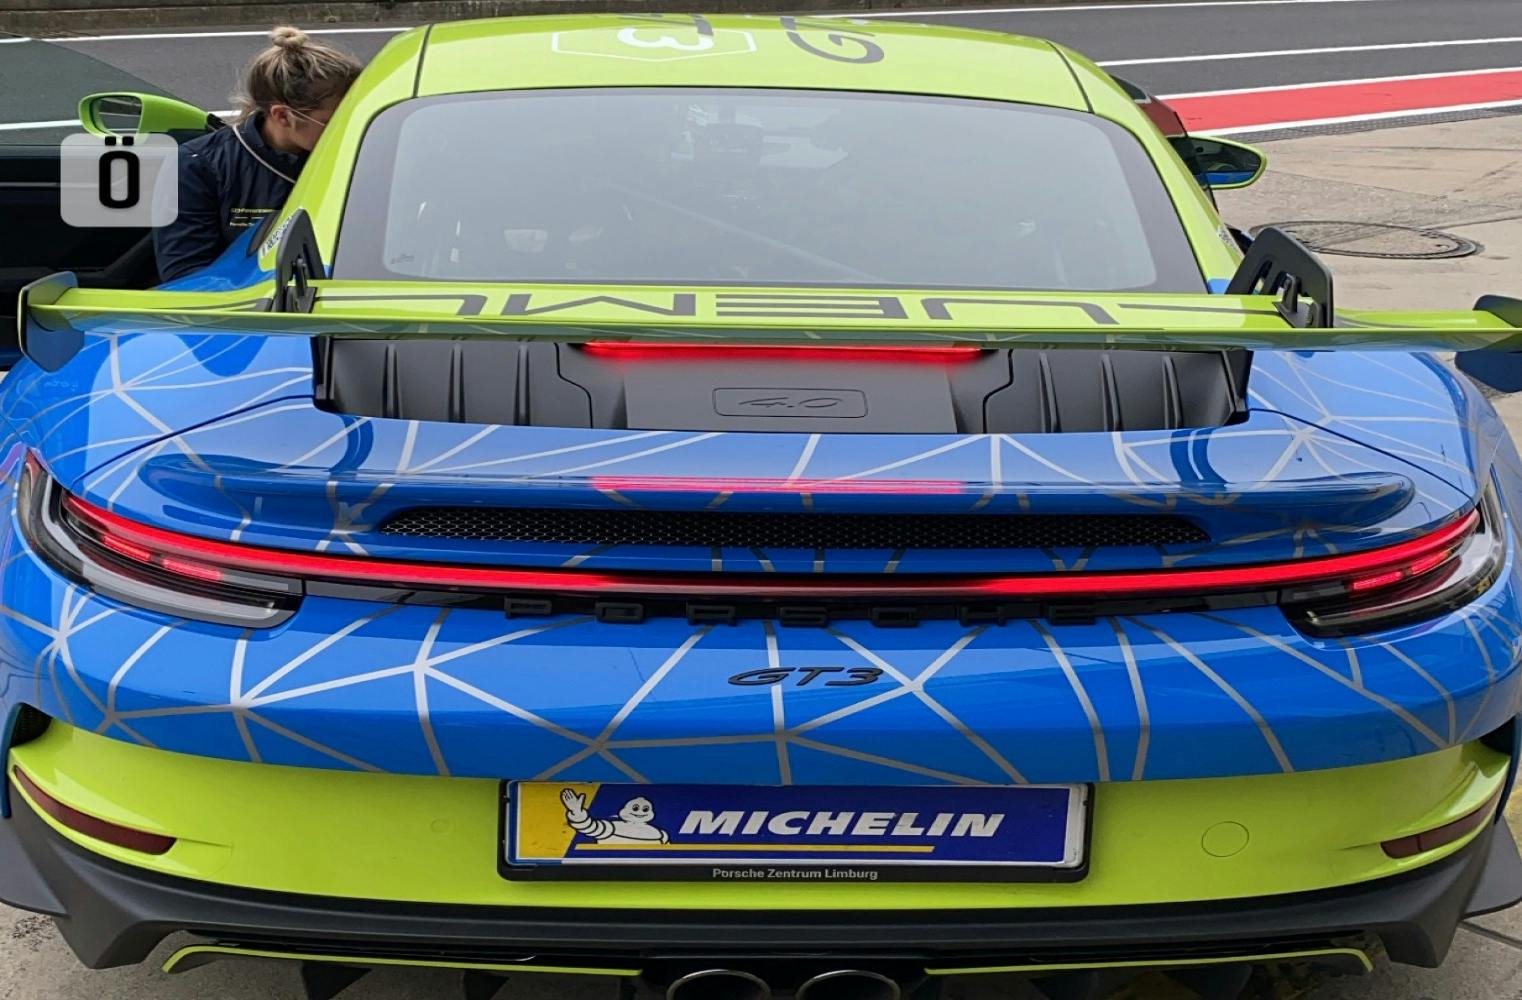 Porsche 911 GT3 992 steuern | Rennsport | Salzburgring